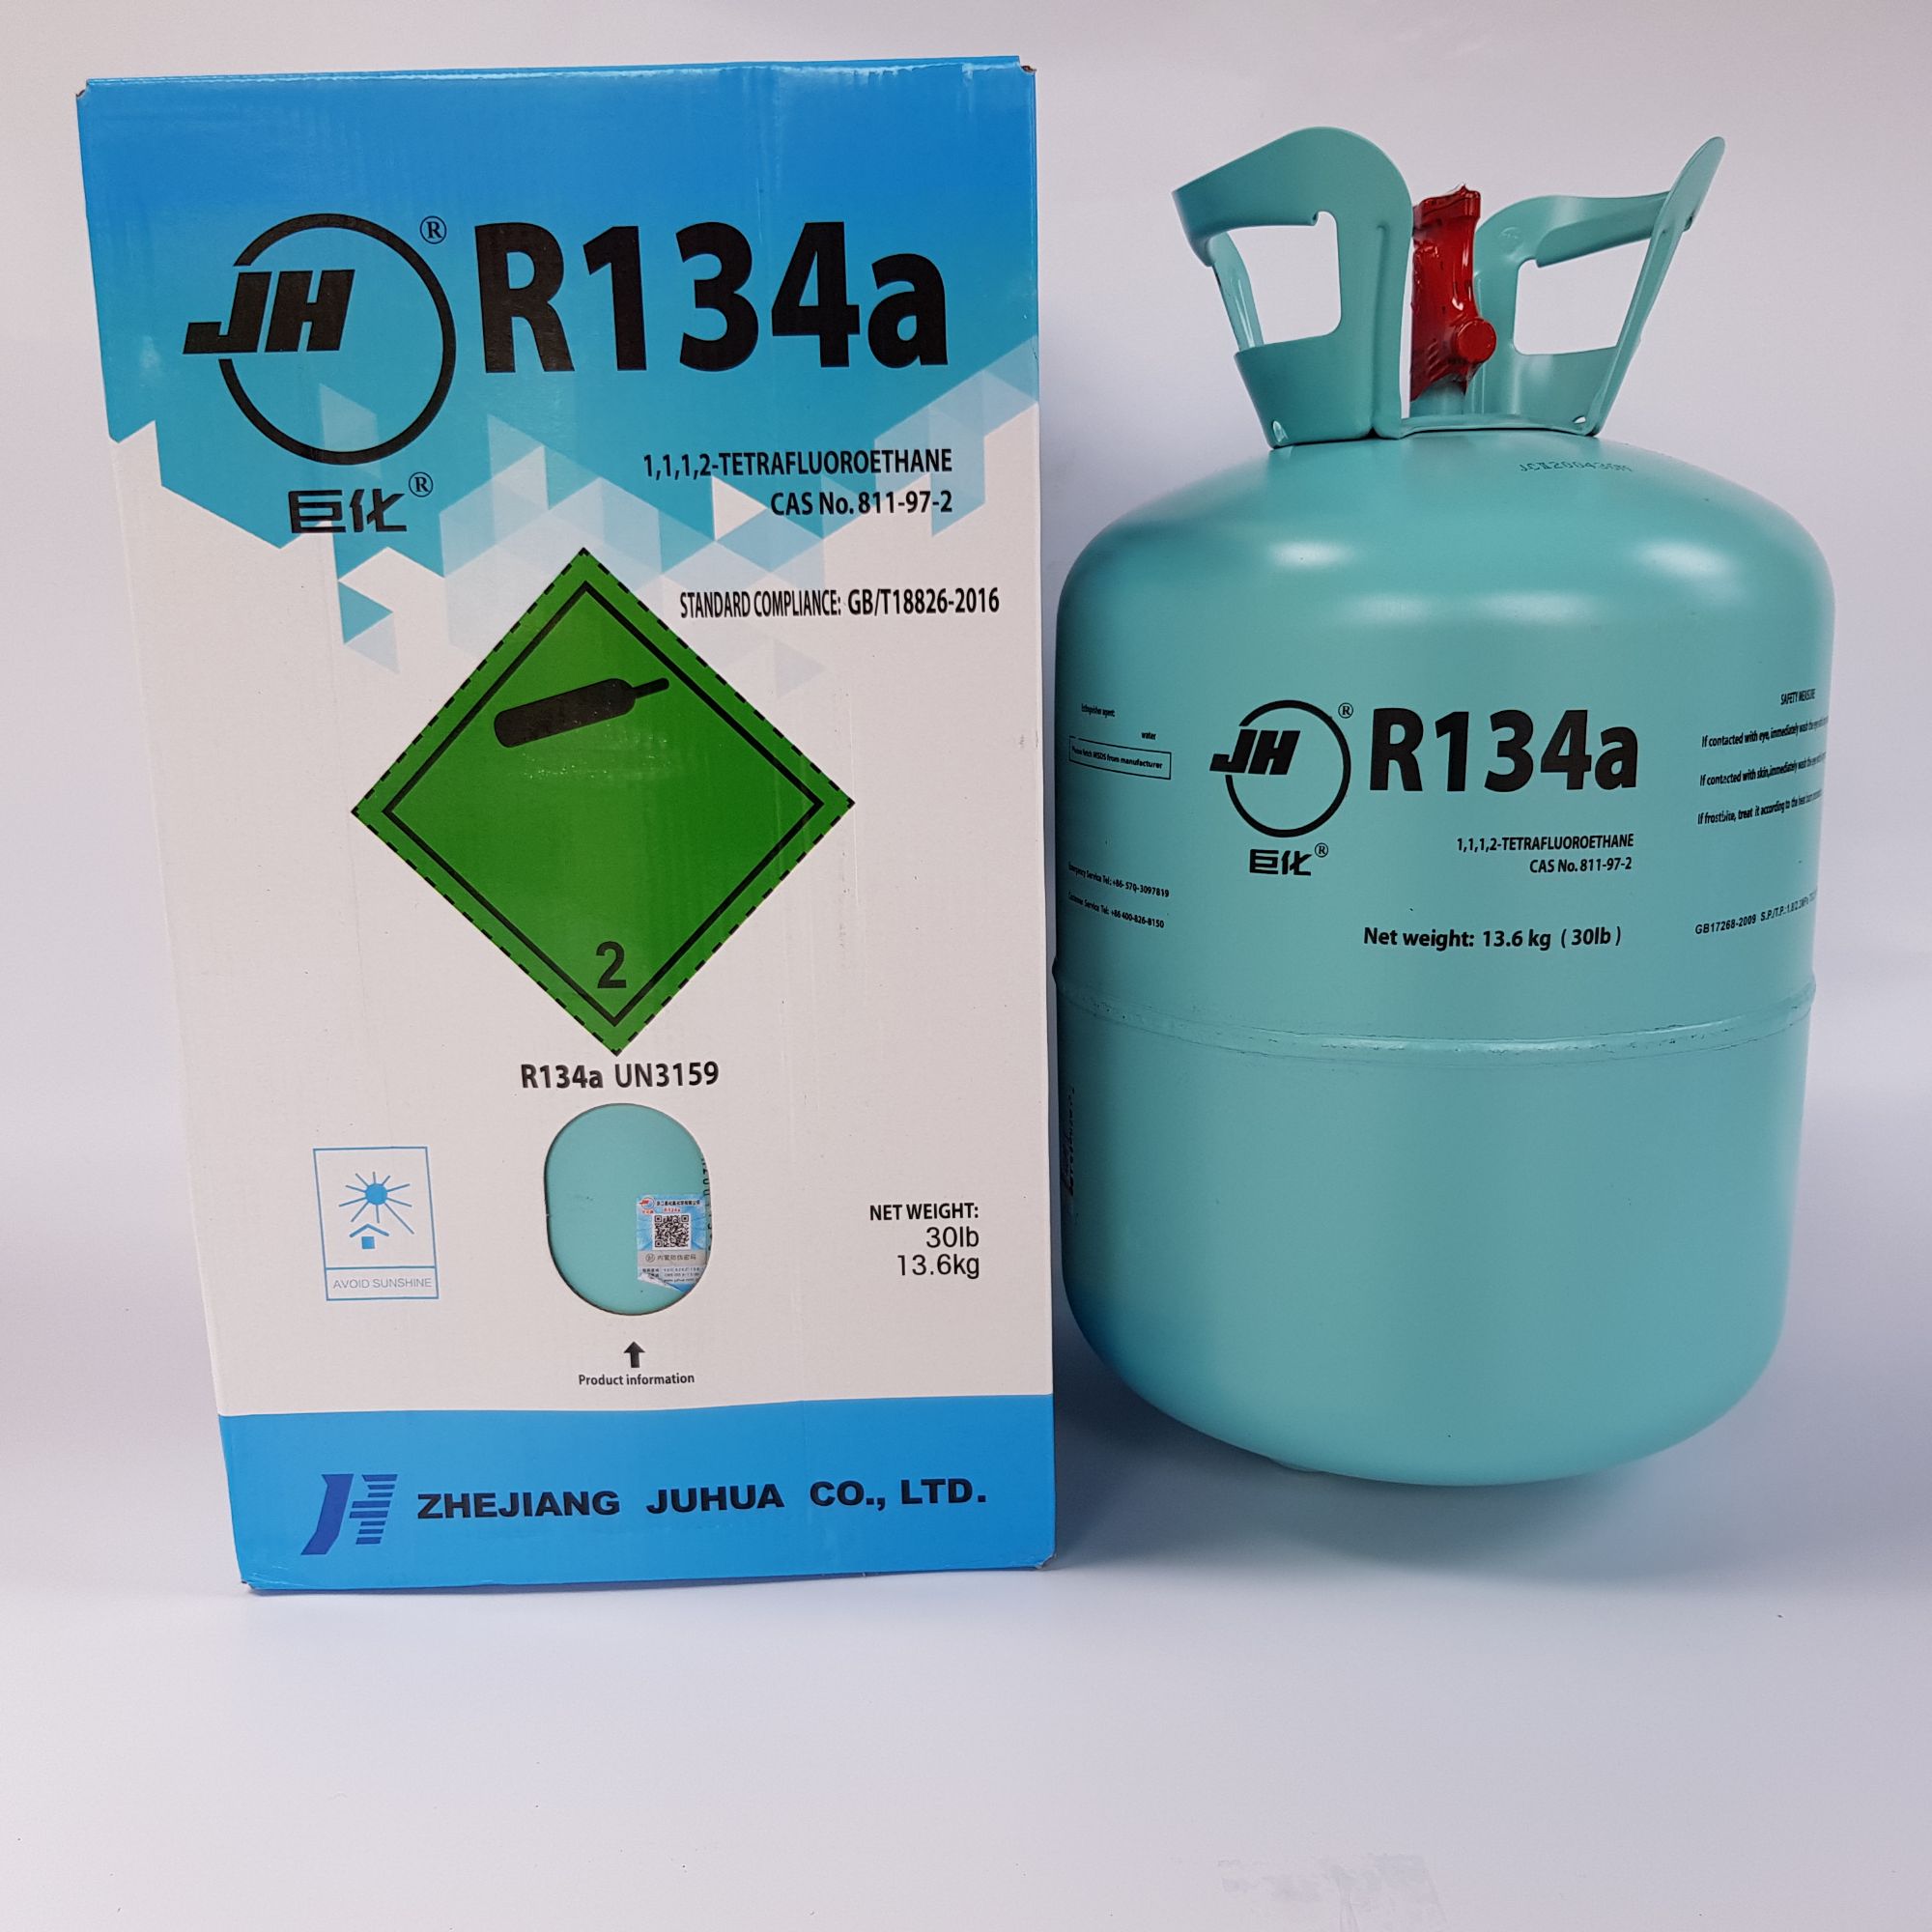 น้ำยาแอร์/สารทำความเย็น R-134a ยี่ห้อ Jh ขนาดน้ำยา 13.6kg.ของแท้นำเข้าจากประเทศจีน. 